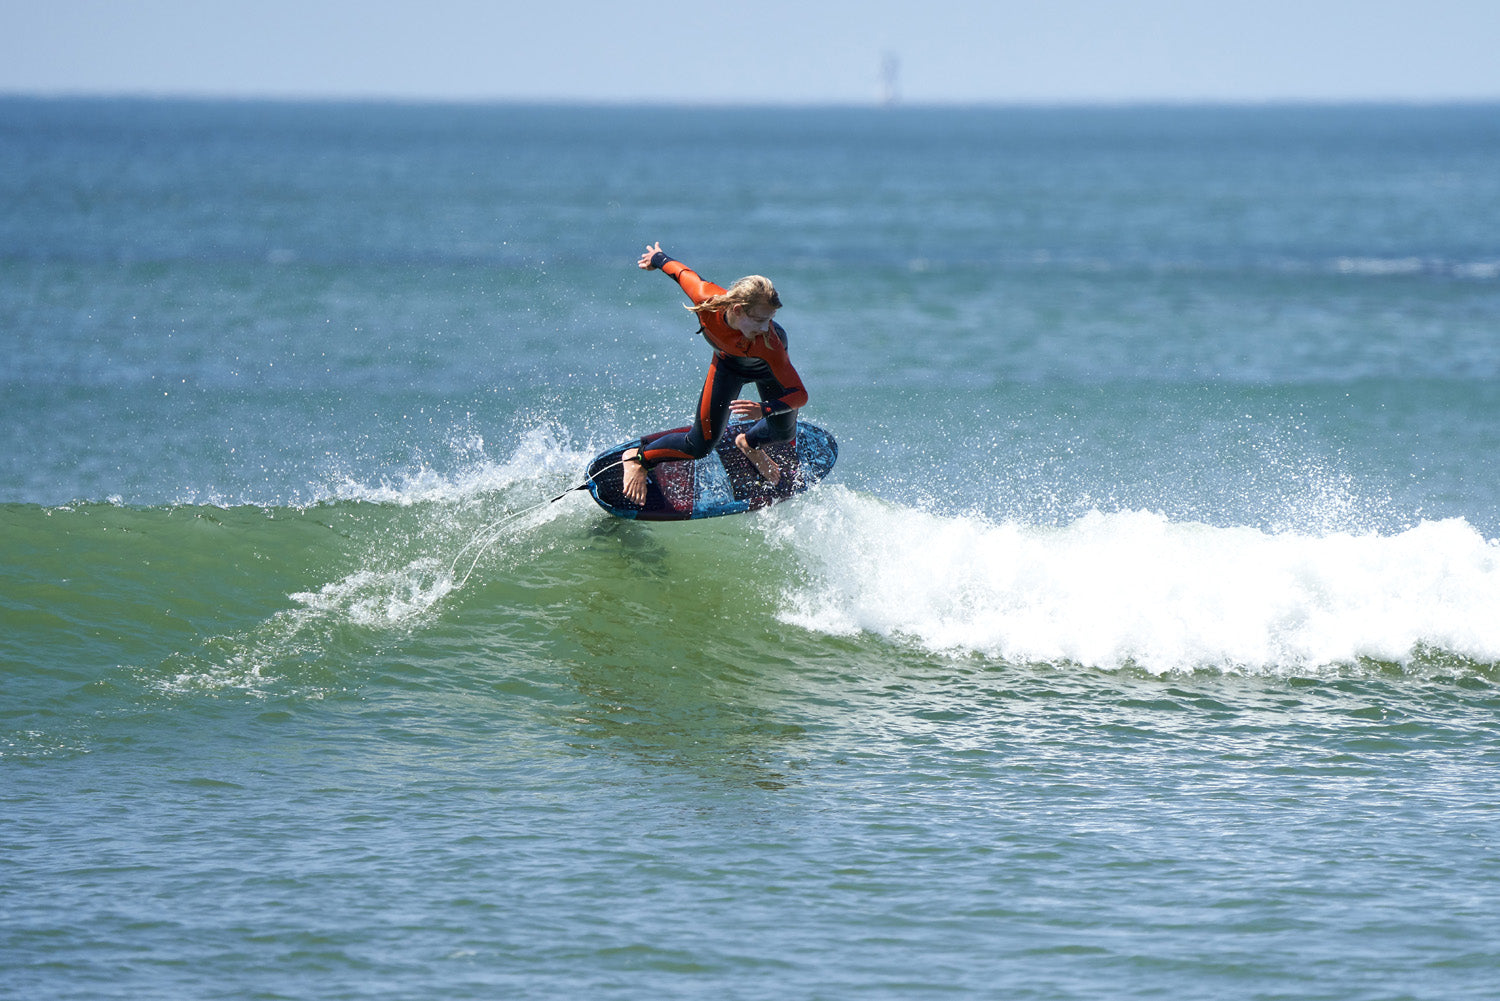 PHOTO : SURF FOILING !!!